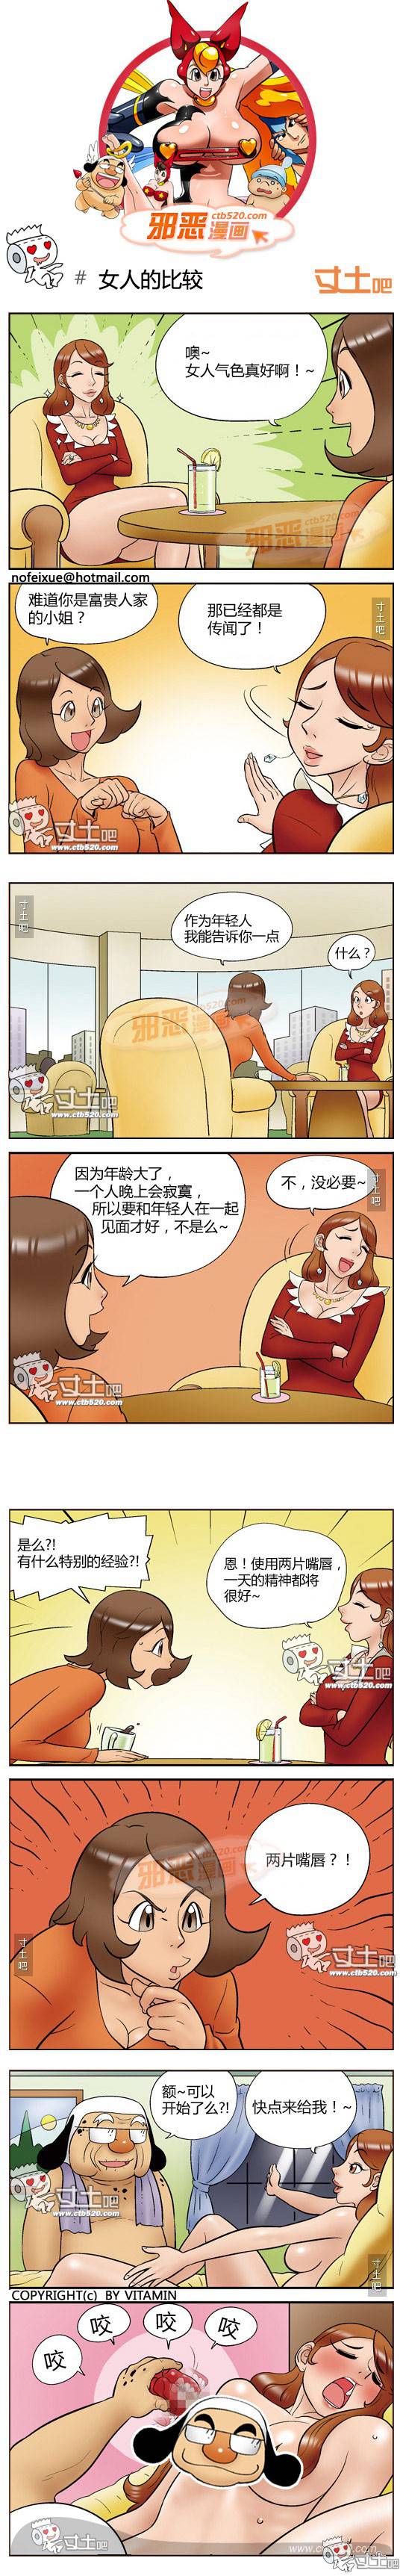 邪恶漫画爆笑囧图第309刊：机器人诺机之2元1次